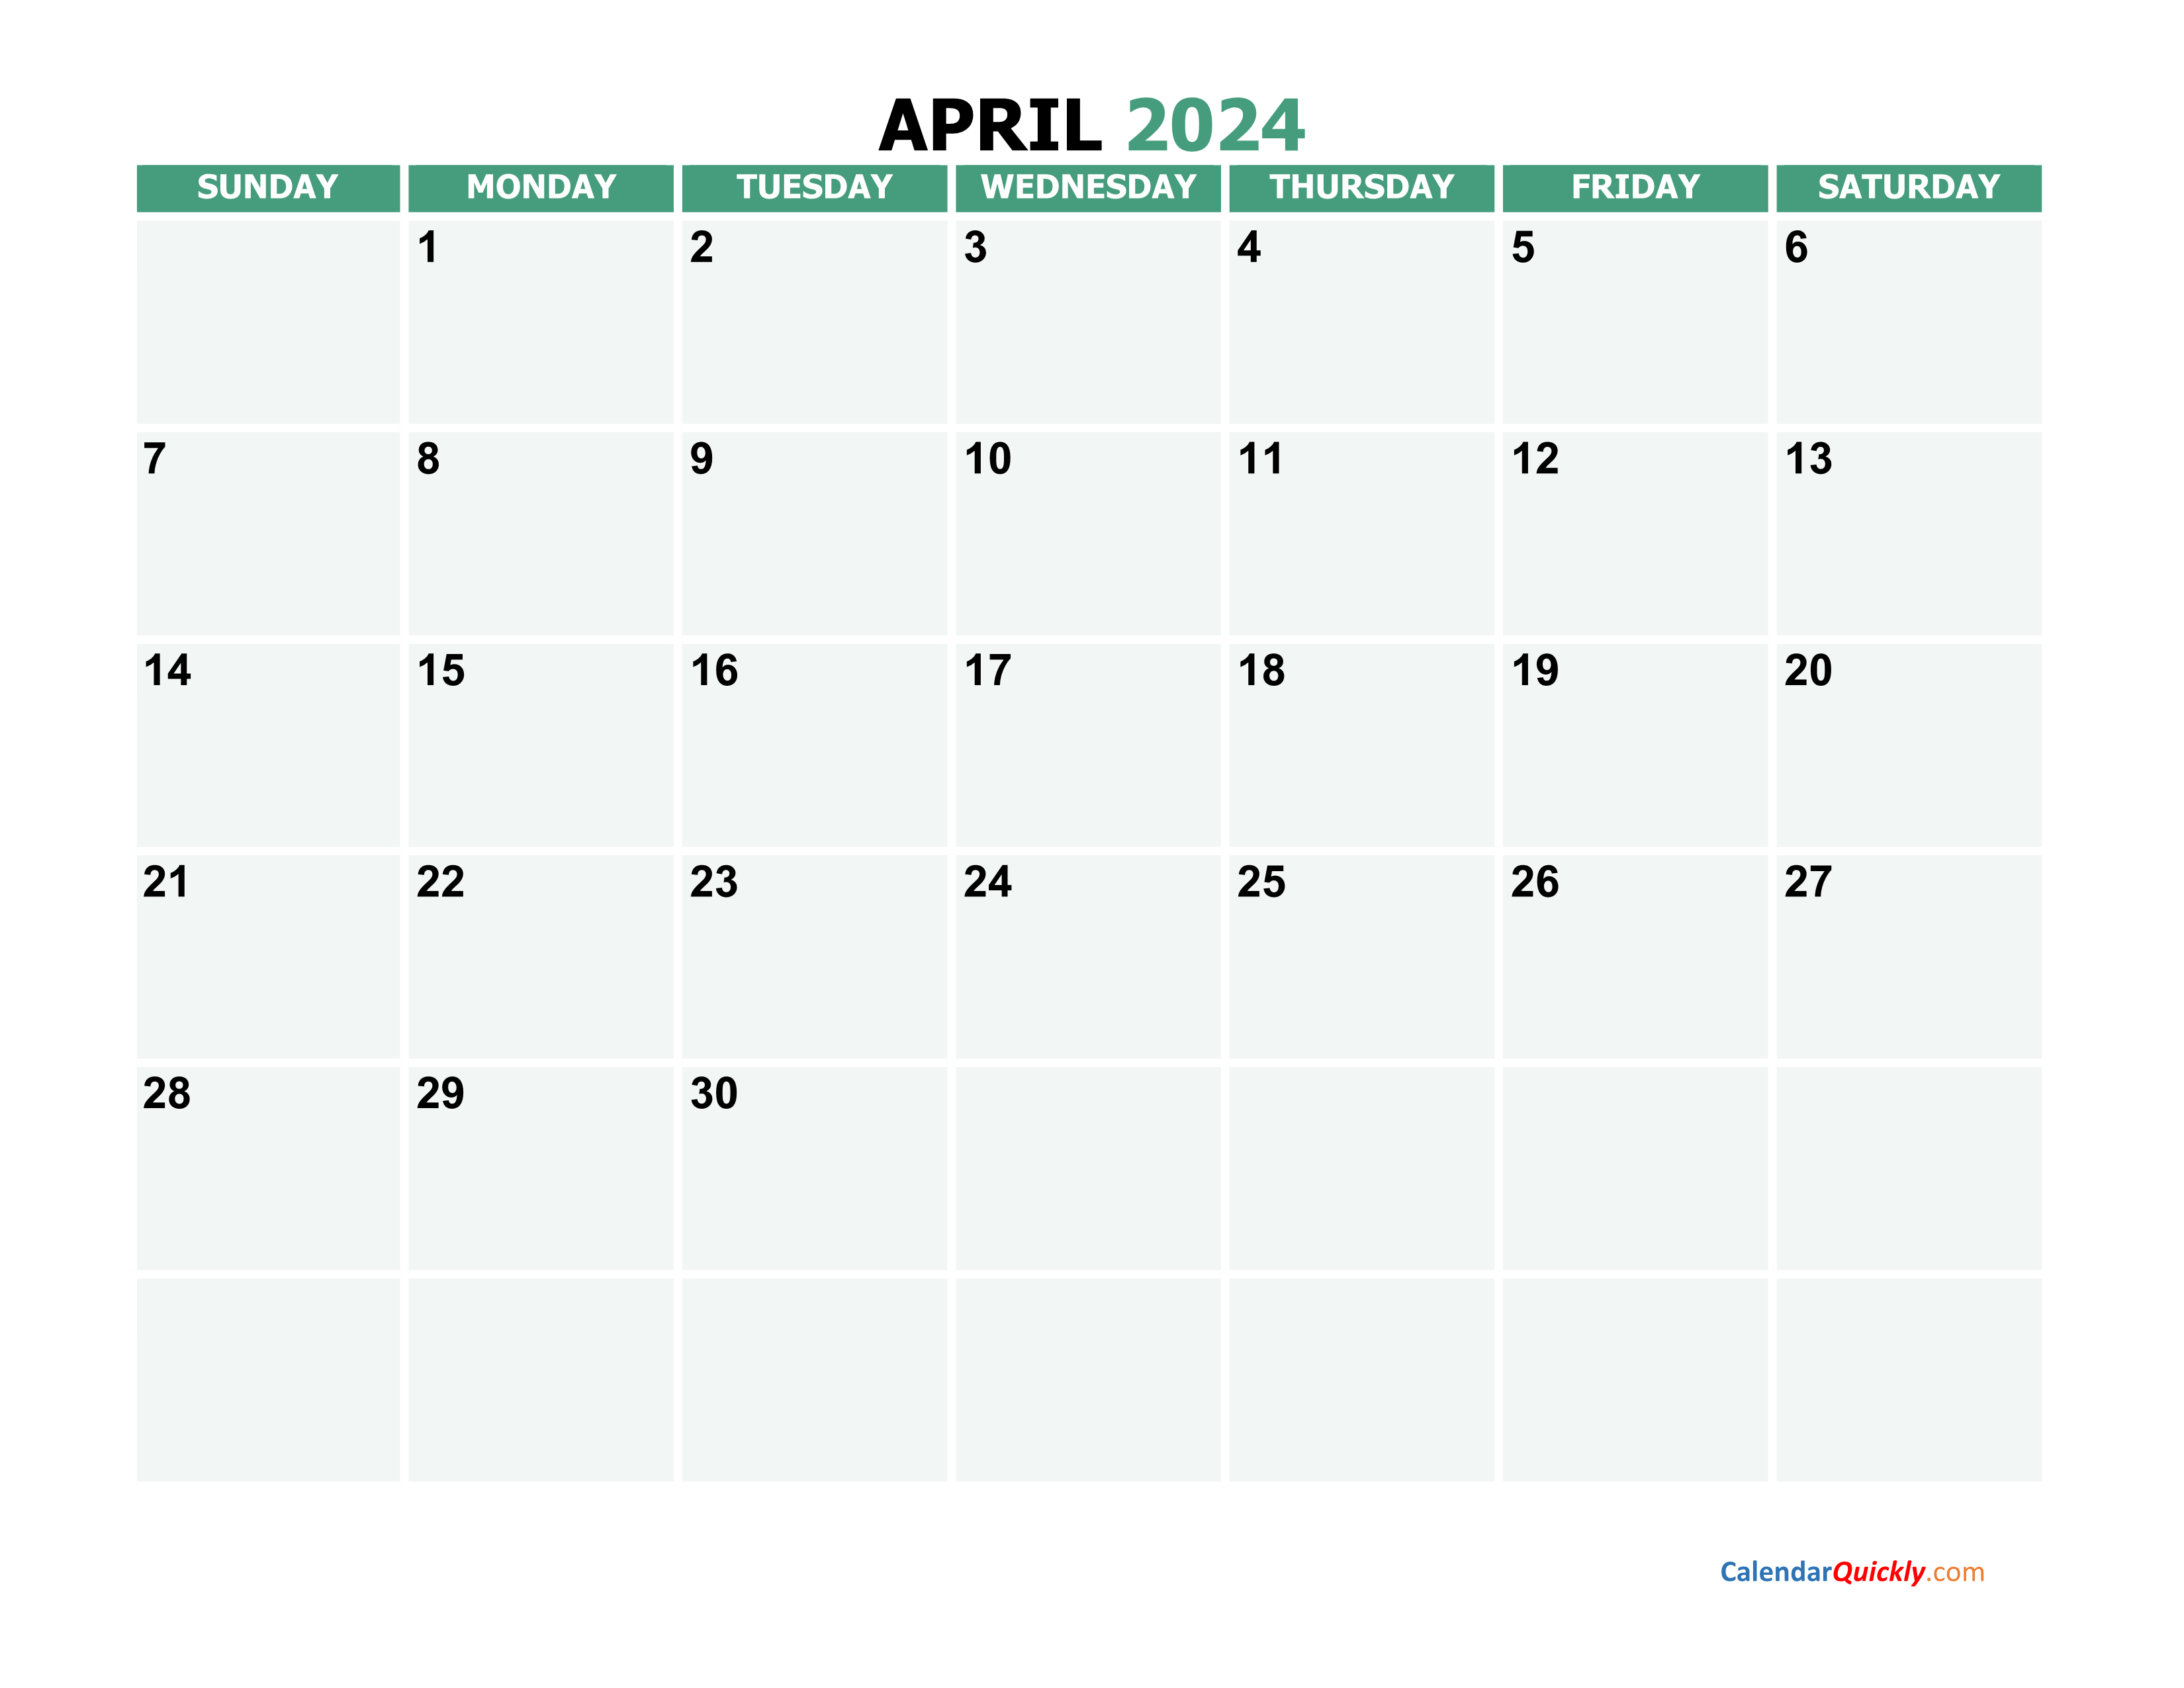 April 2024 Calendars | Calendar Quickly